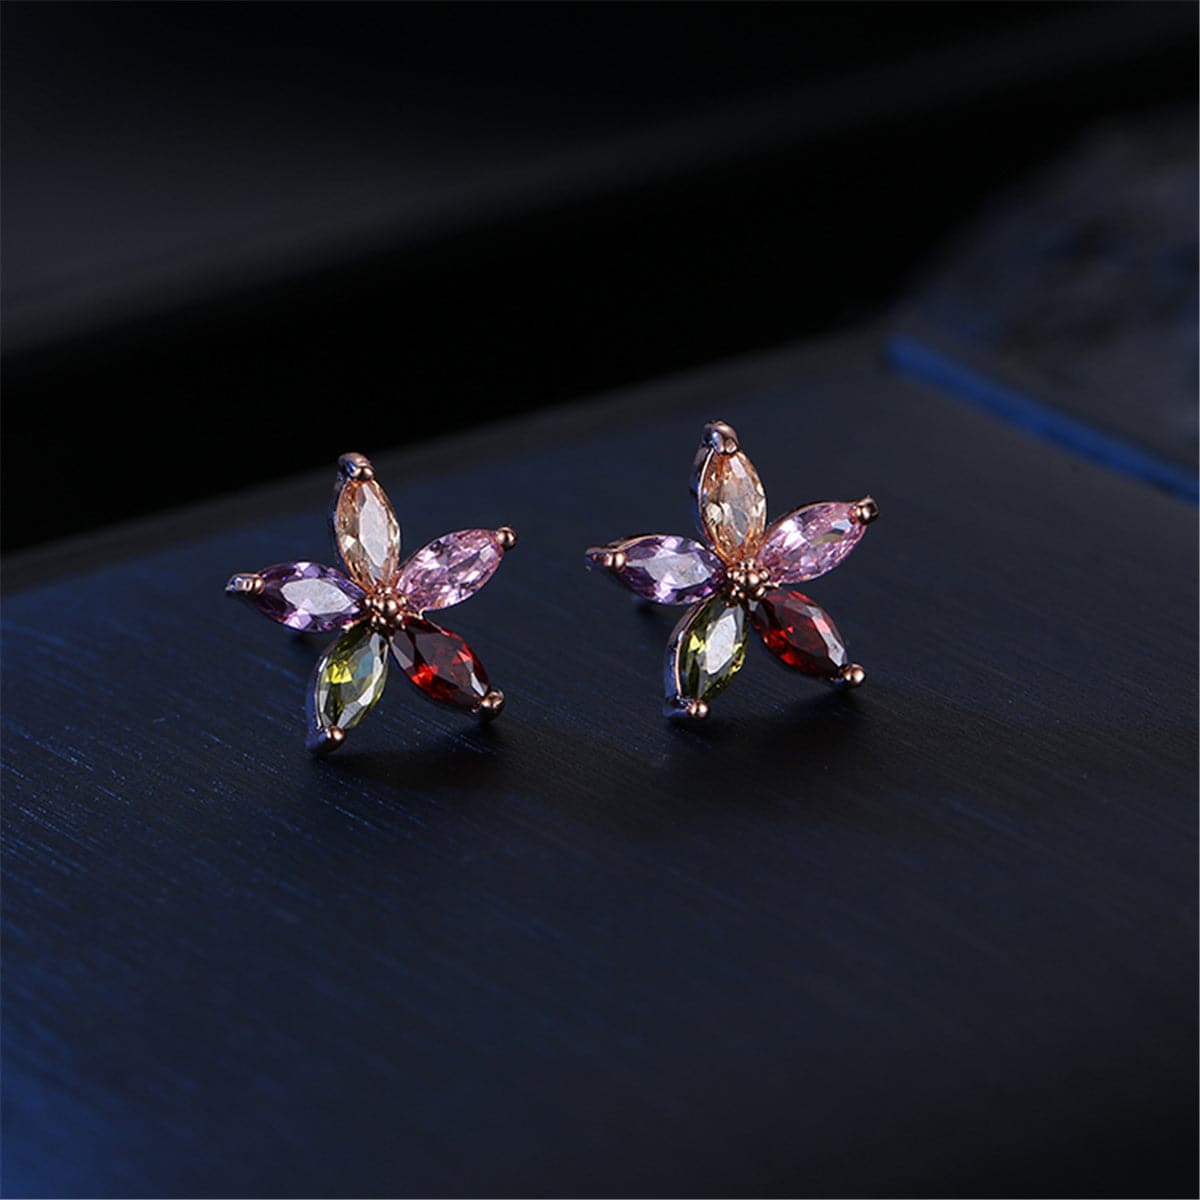 Jewel-Tone Cubic Zirconia & 18k Rose Gold-Plated Star Earrings - streetregion